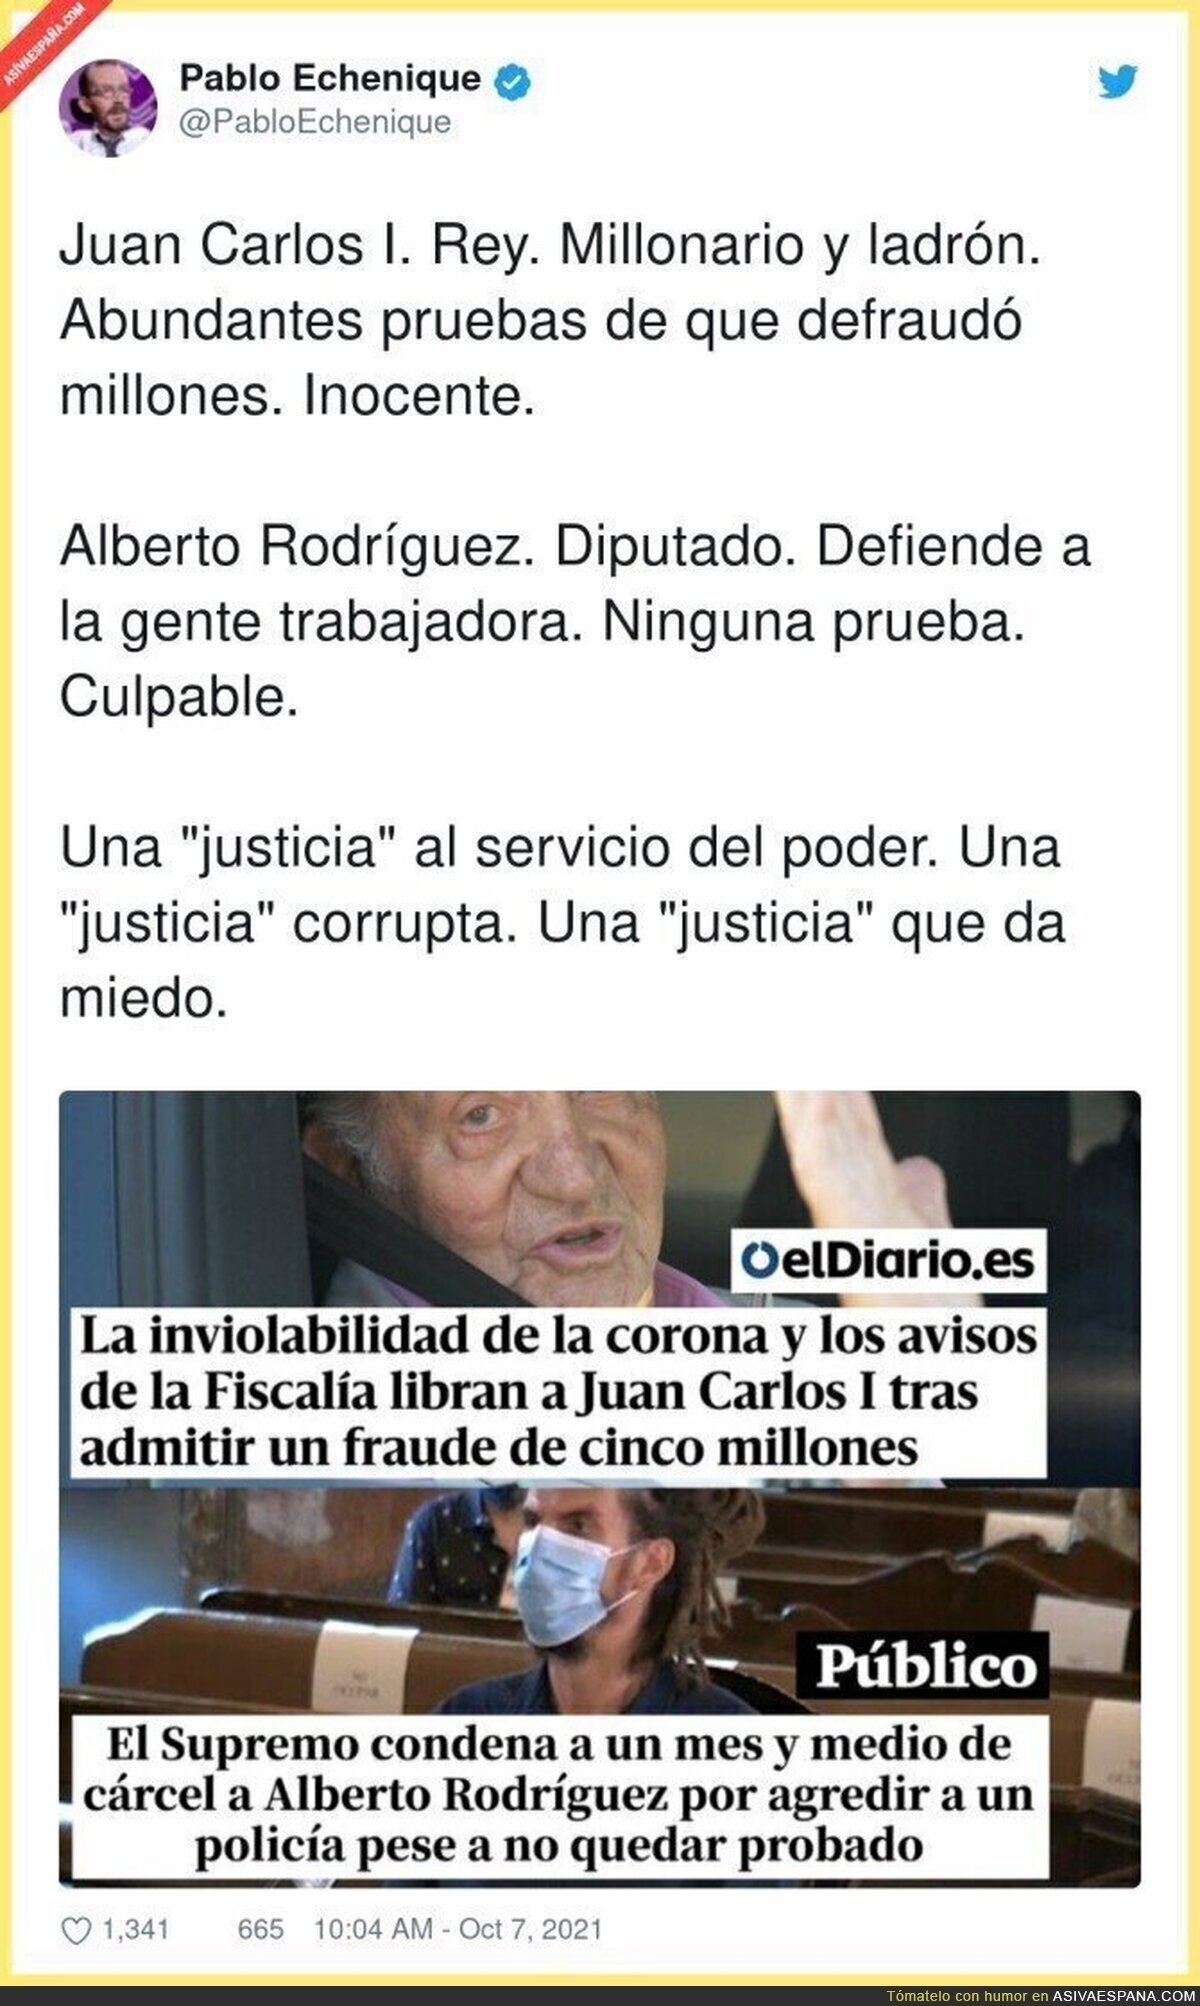 Pablo Echenique se pronuncia sobre la condena a Alberto Rodríguez